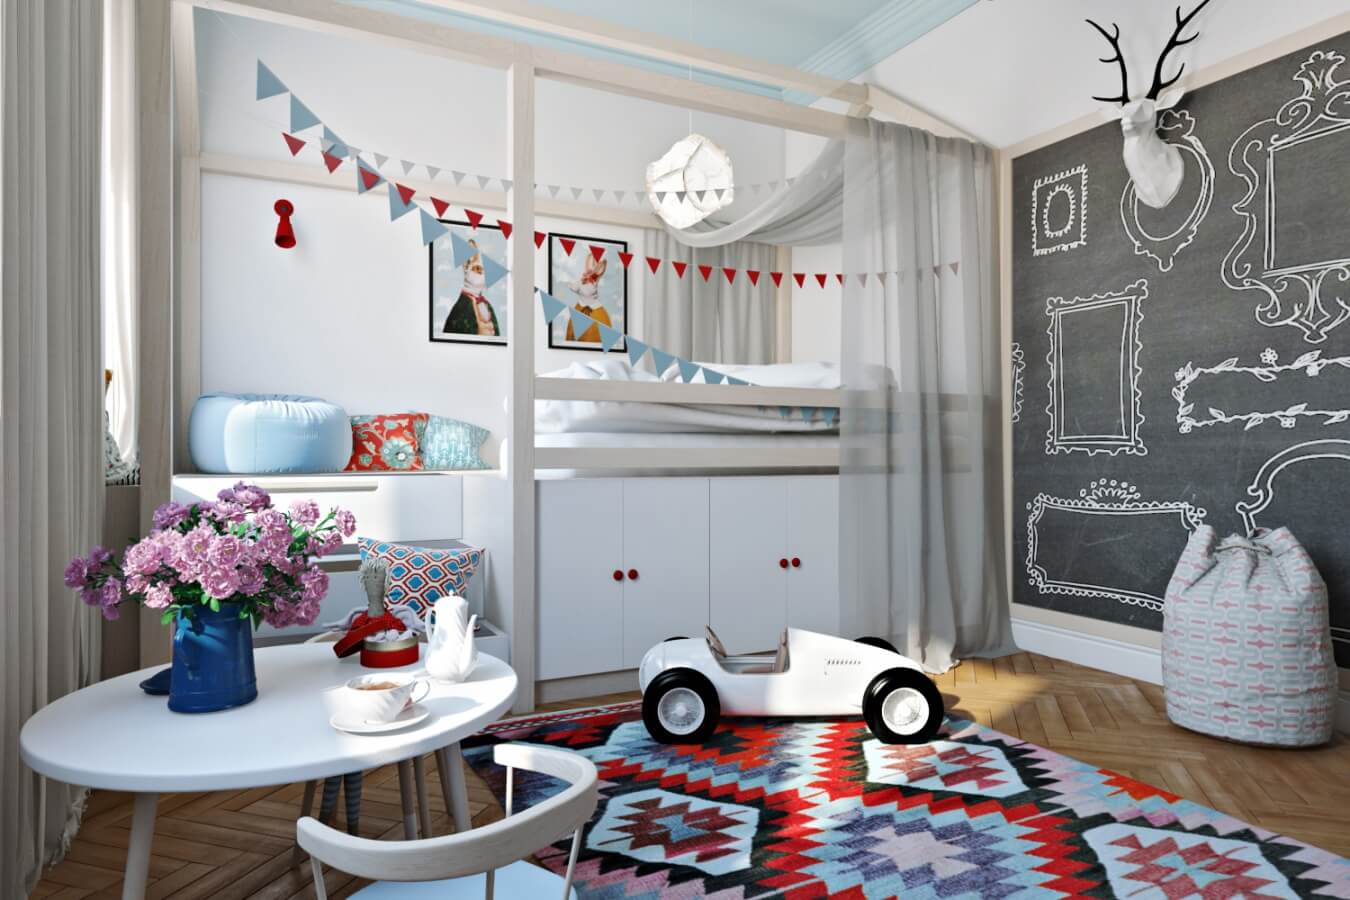 Детская комната для мальчика – фото идеи для дизайна интерьера ирекомендации